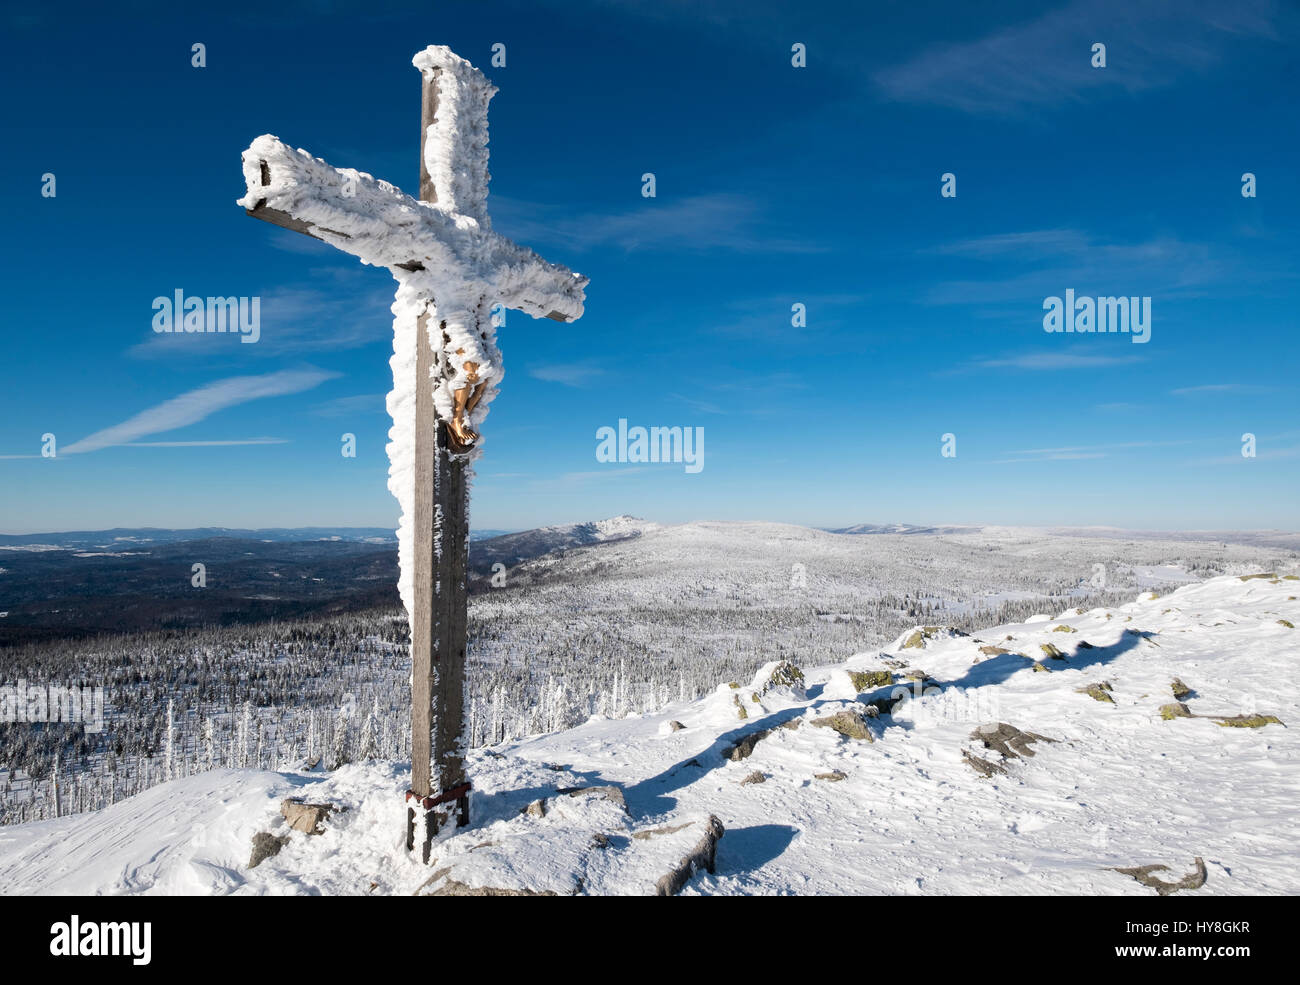 Gipfelkreuz auf Lusen, hinten der Rachel, Nationalpark Bayerischer Wald, Niederbayern, Bayern, Deutschland Stock Photo